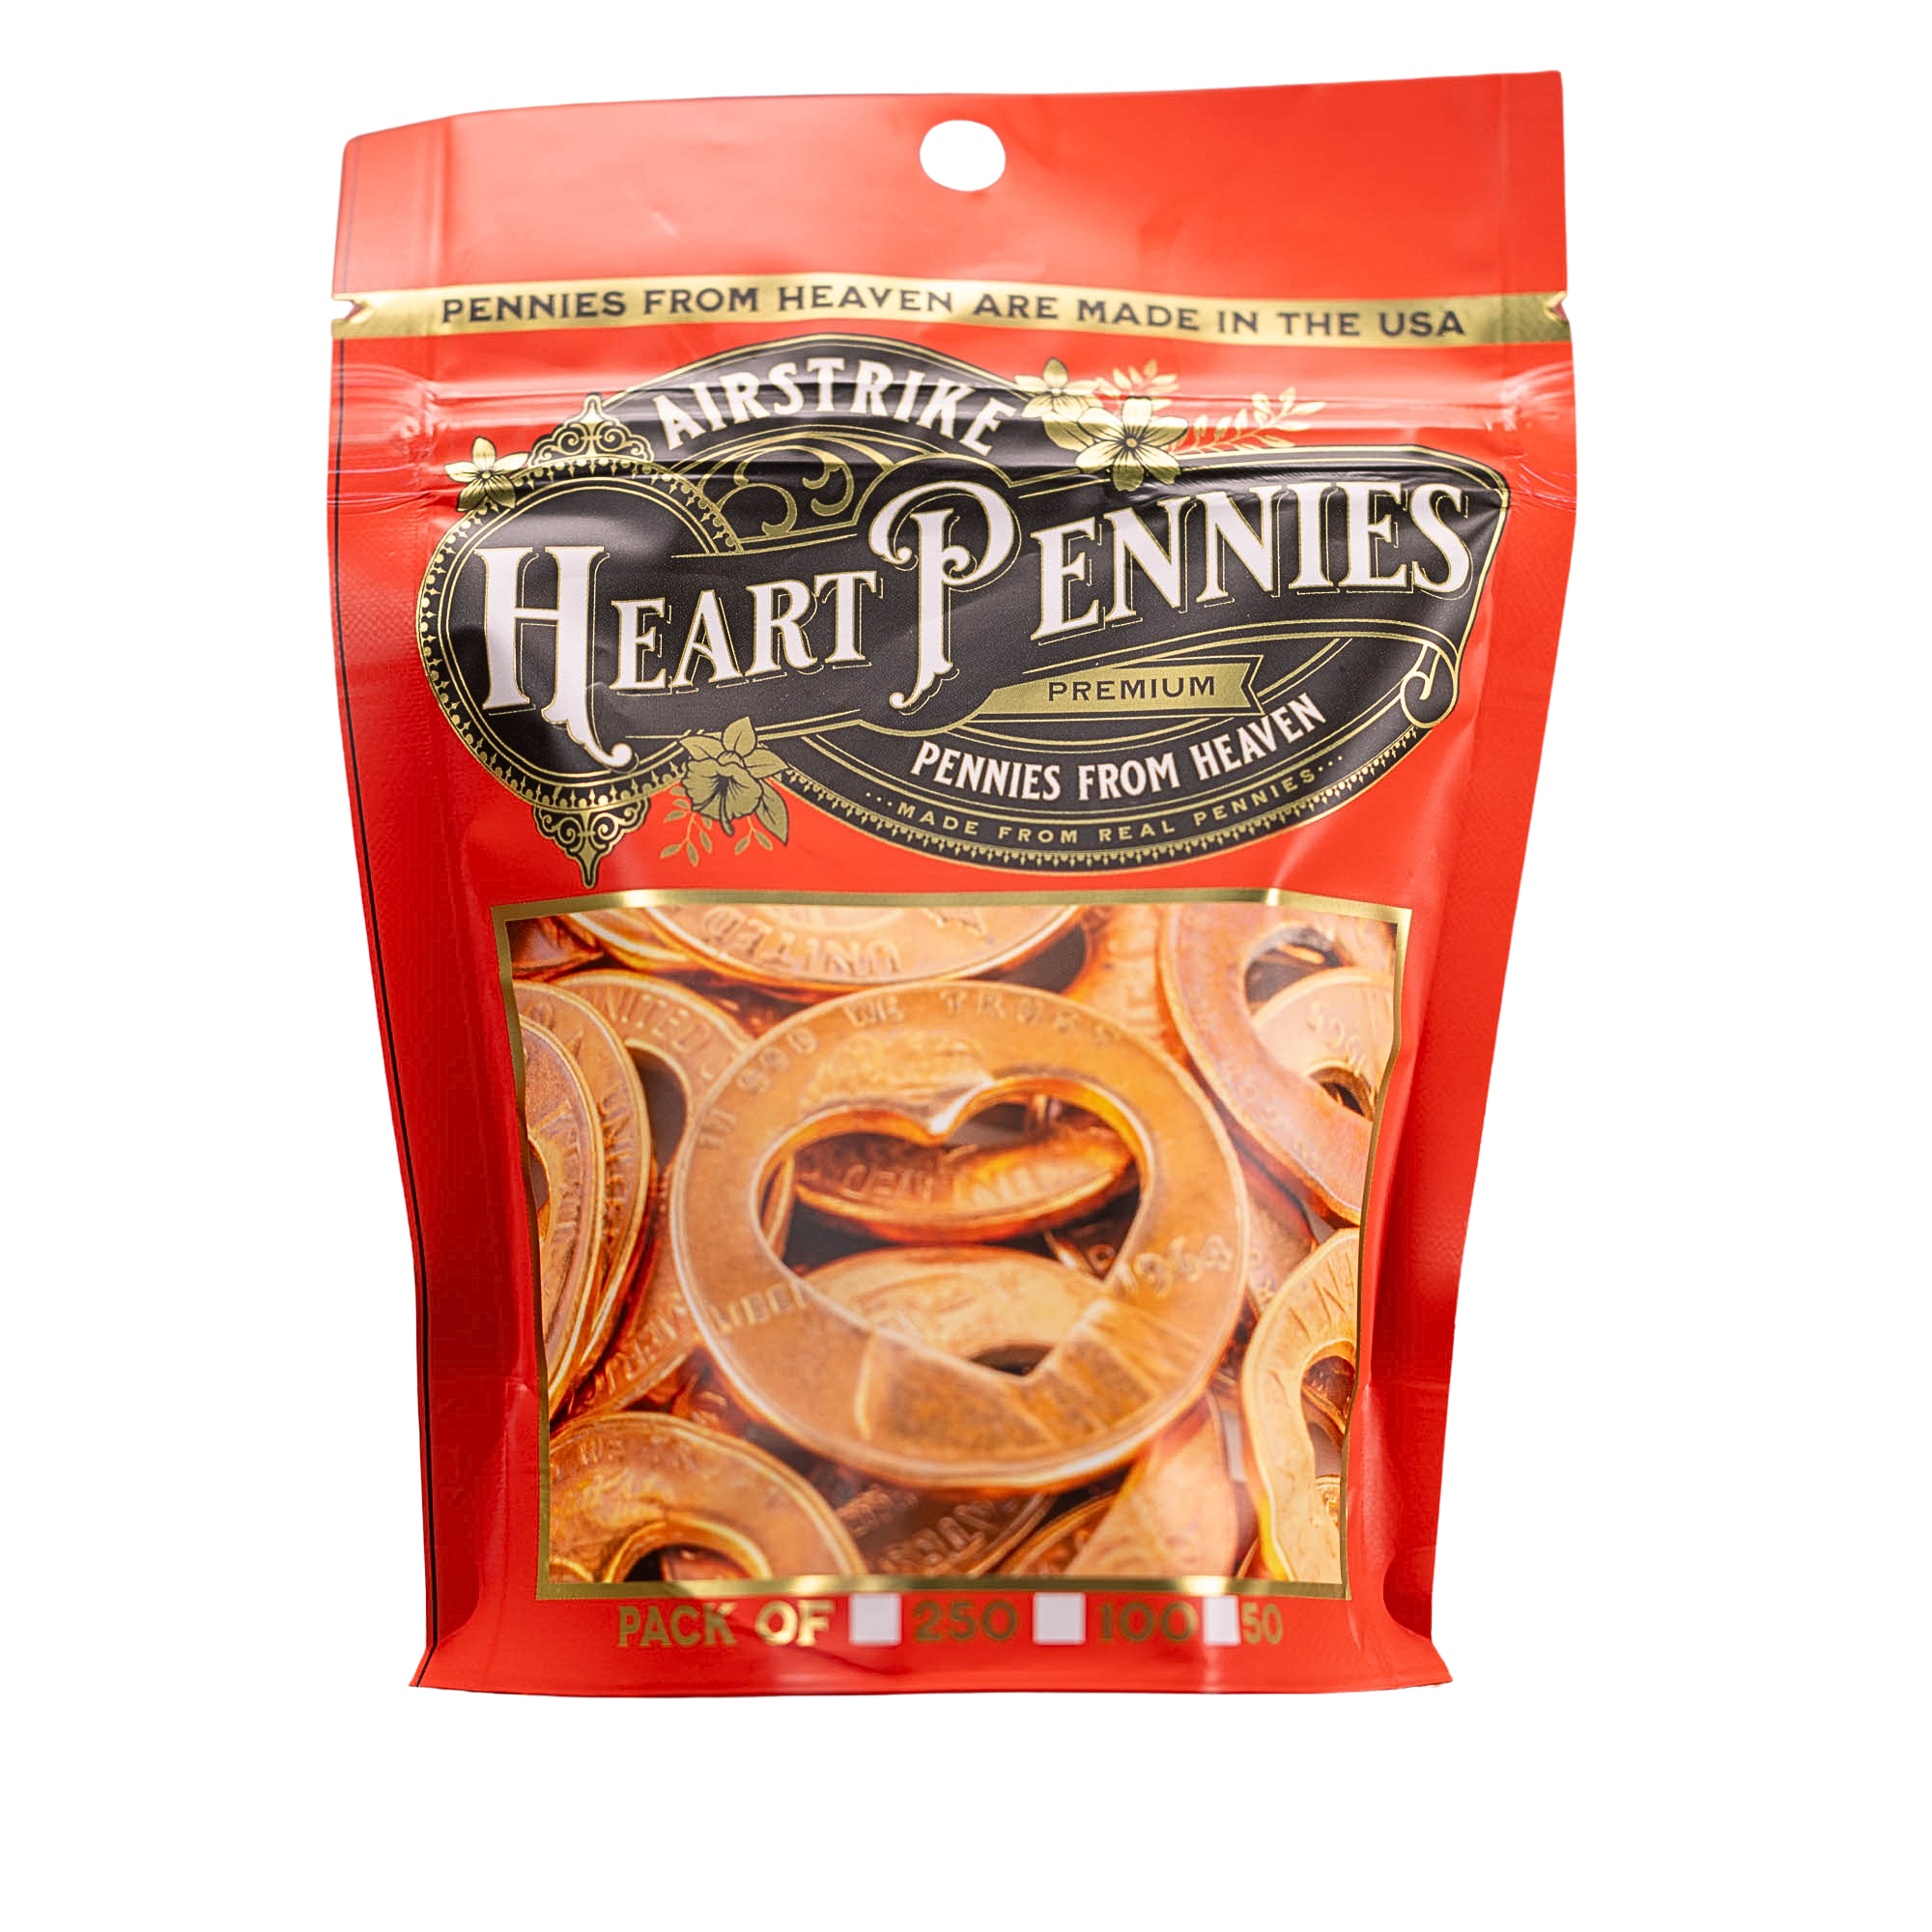 Heart Pennies from Heaven - Heart Penny